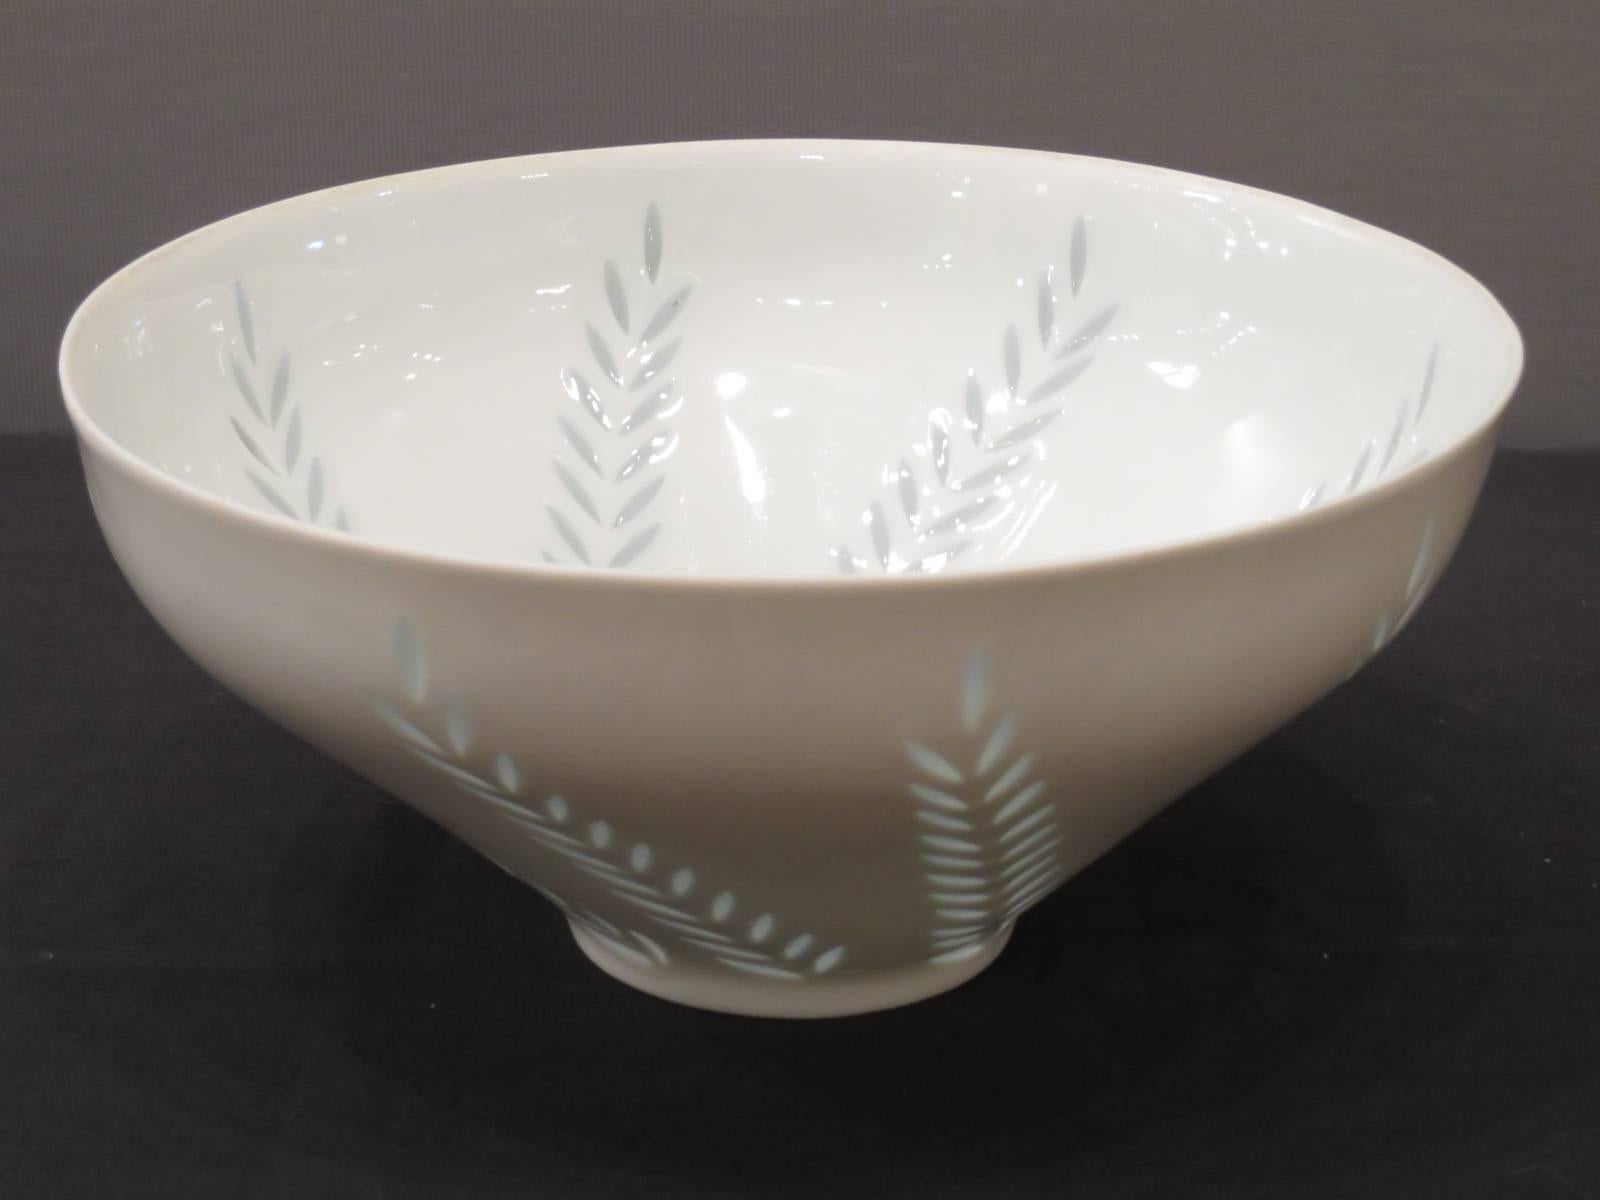 Porcelain bowl in the rice pattern designed by Friedl Holzer-Kjellberg for Arabia, Finland.